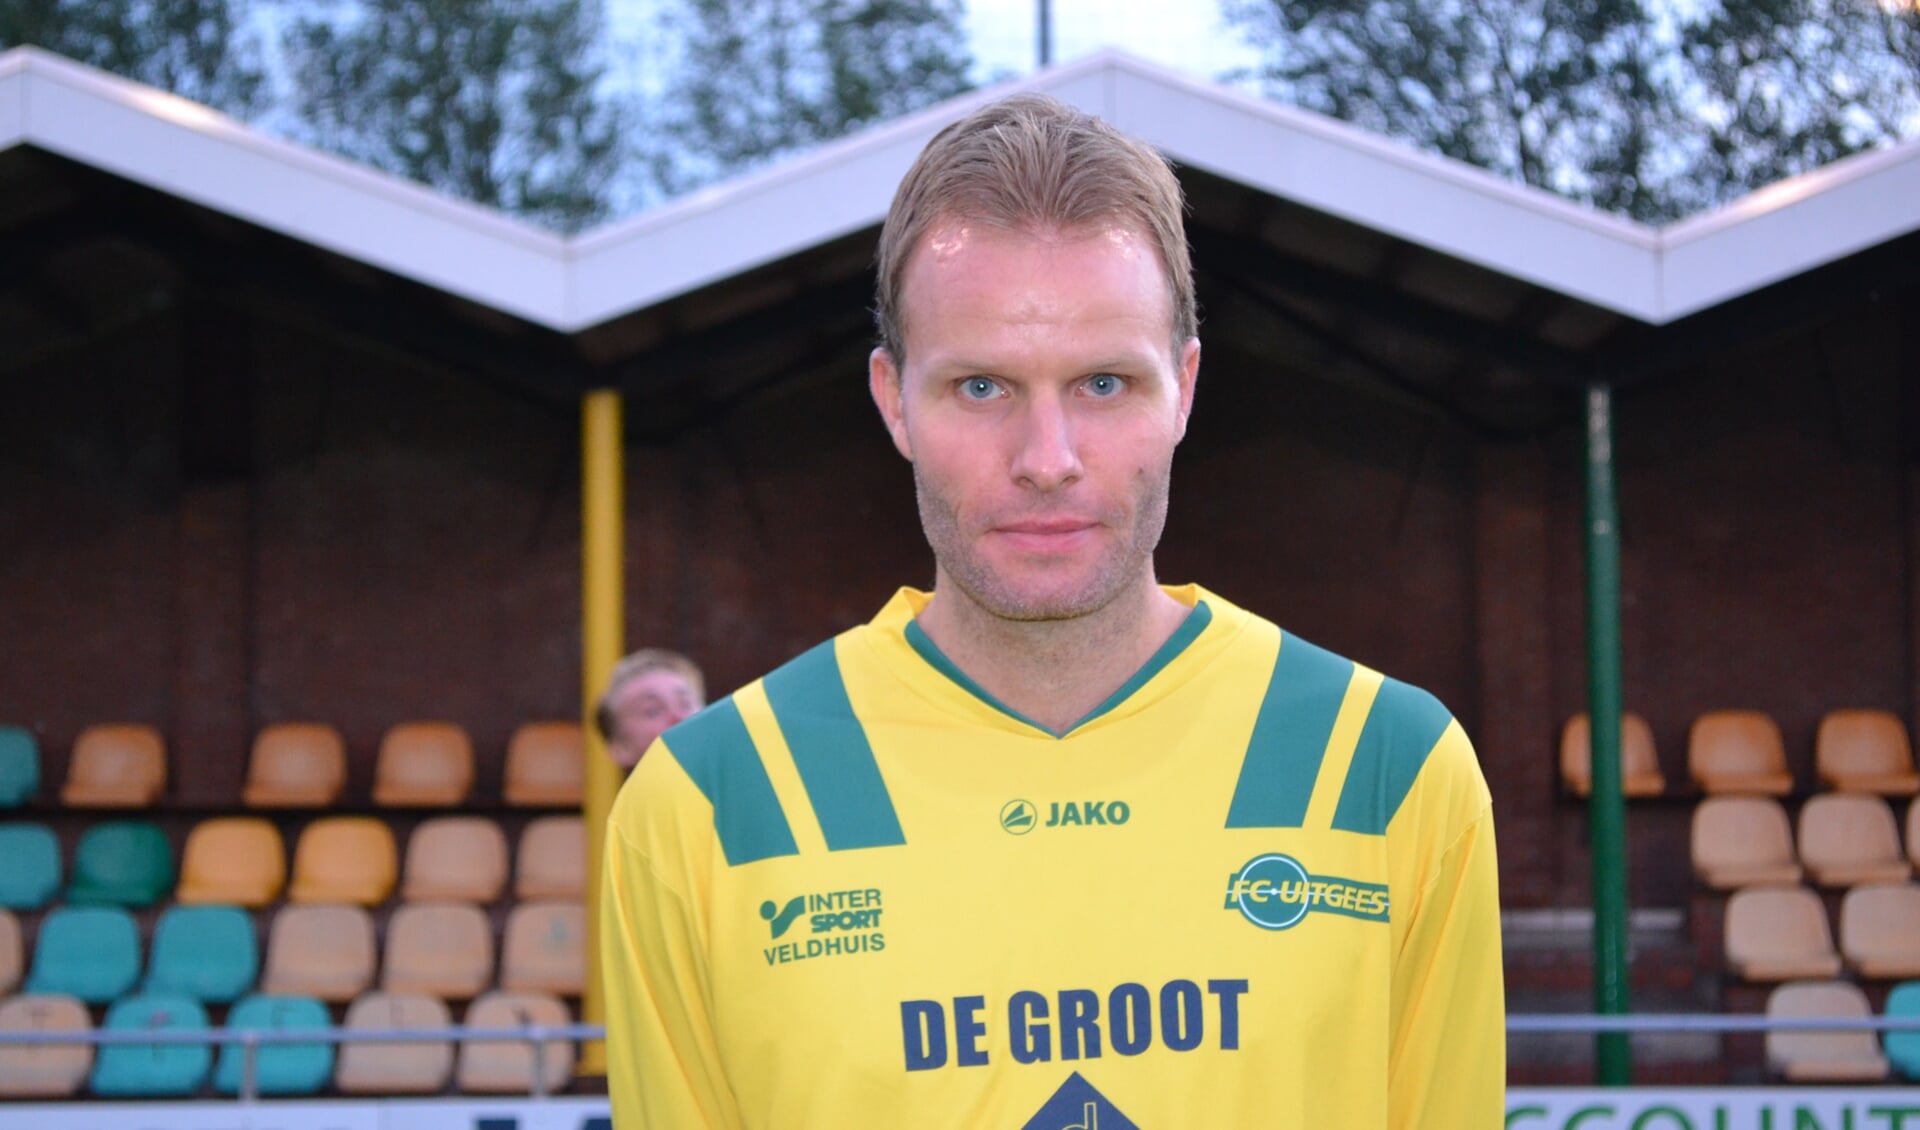 Ruud Koedijk is 'Bakkum en Krookspeler' van de wedstrijd.